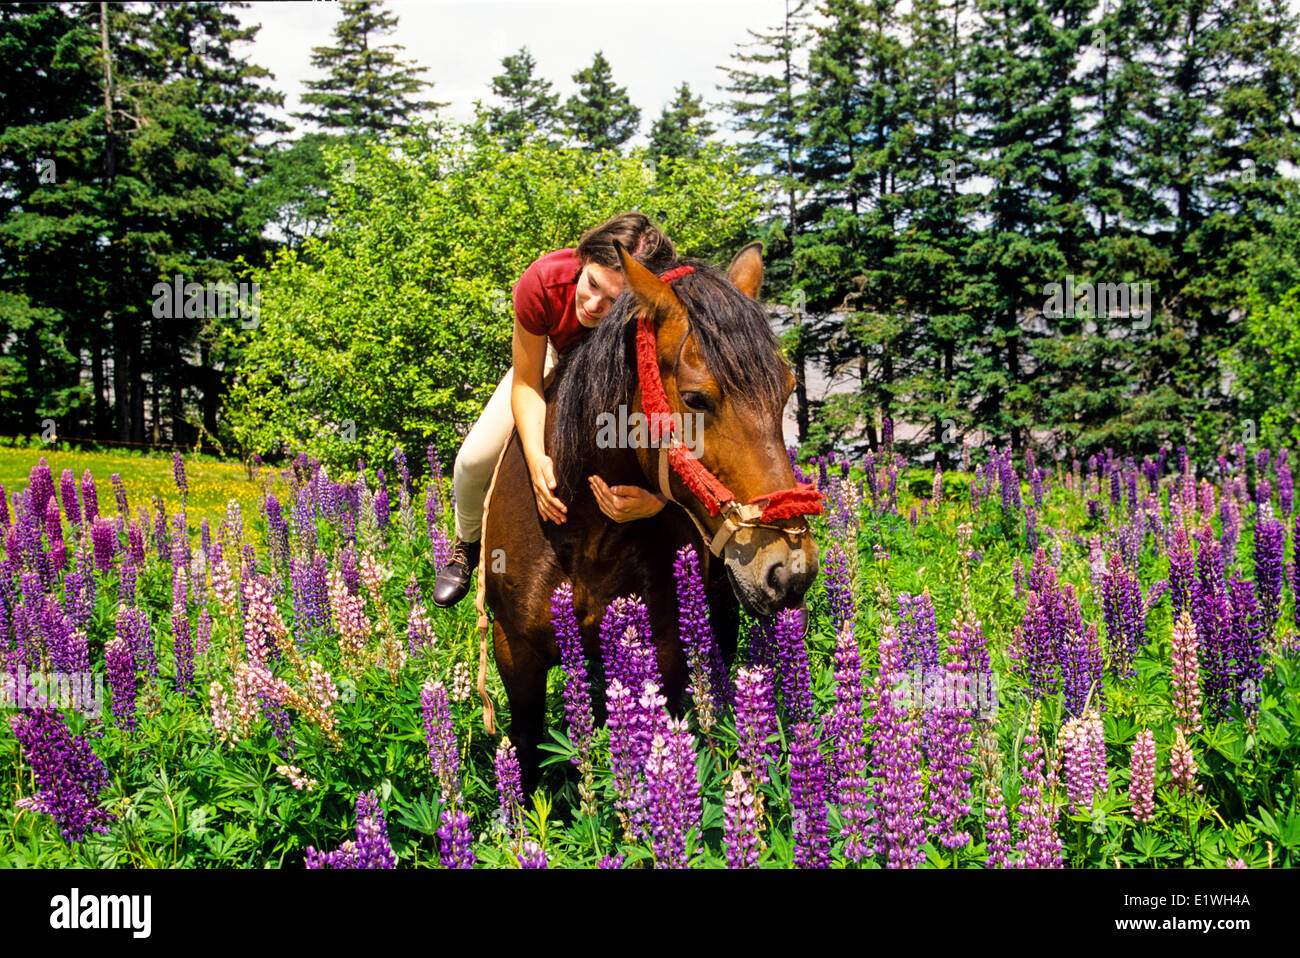 Jeune fille et un cheval dans le champ Lupin, Saint Catherines, Prince Edward Island, Canada, modèle publié Banque D'Images